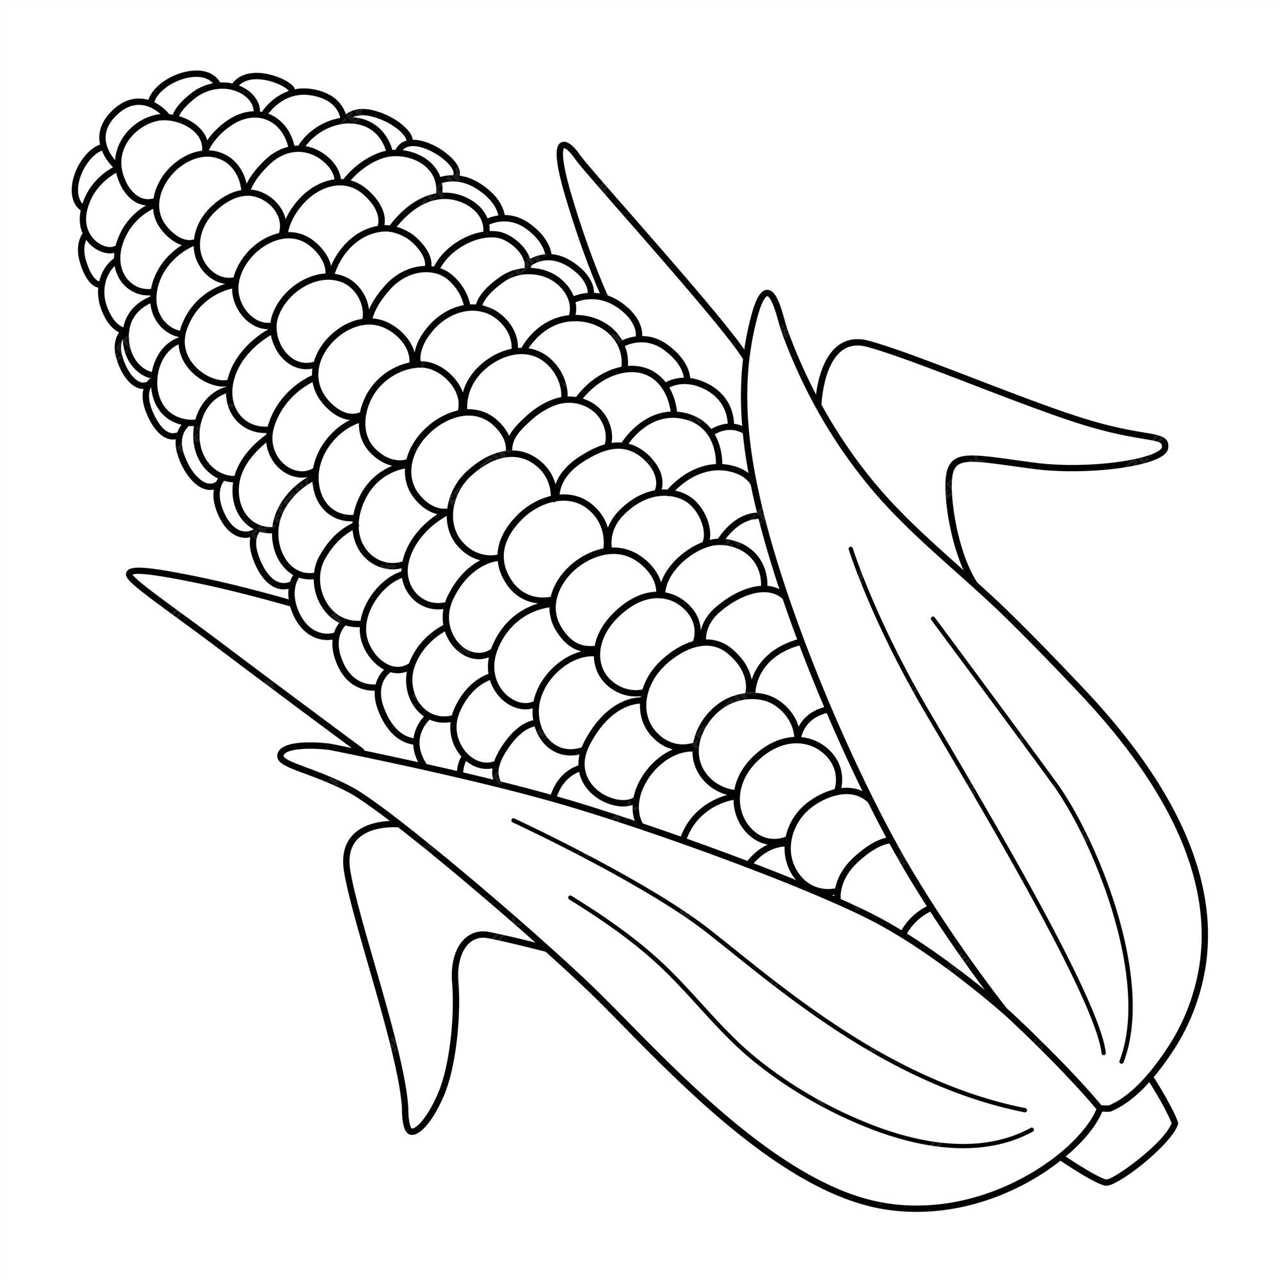 Colouring corn